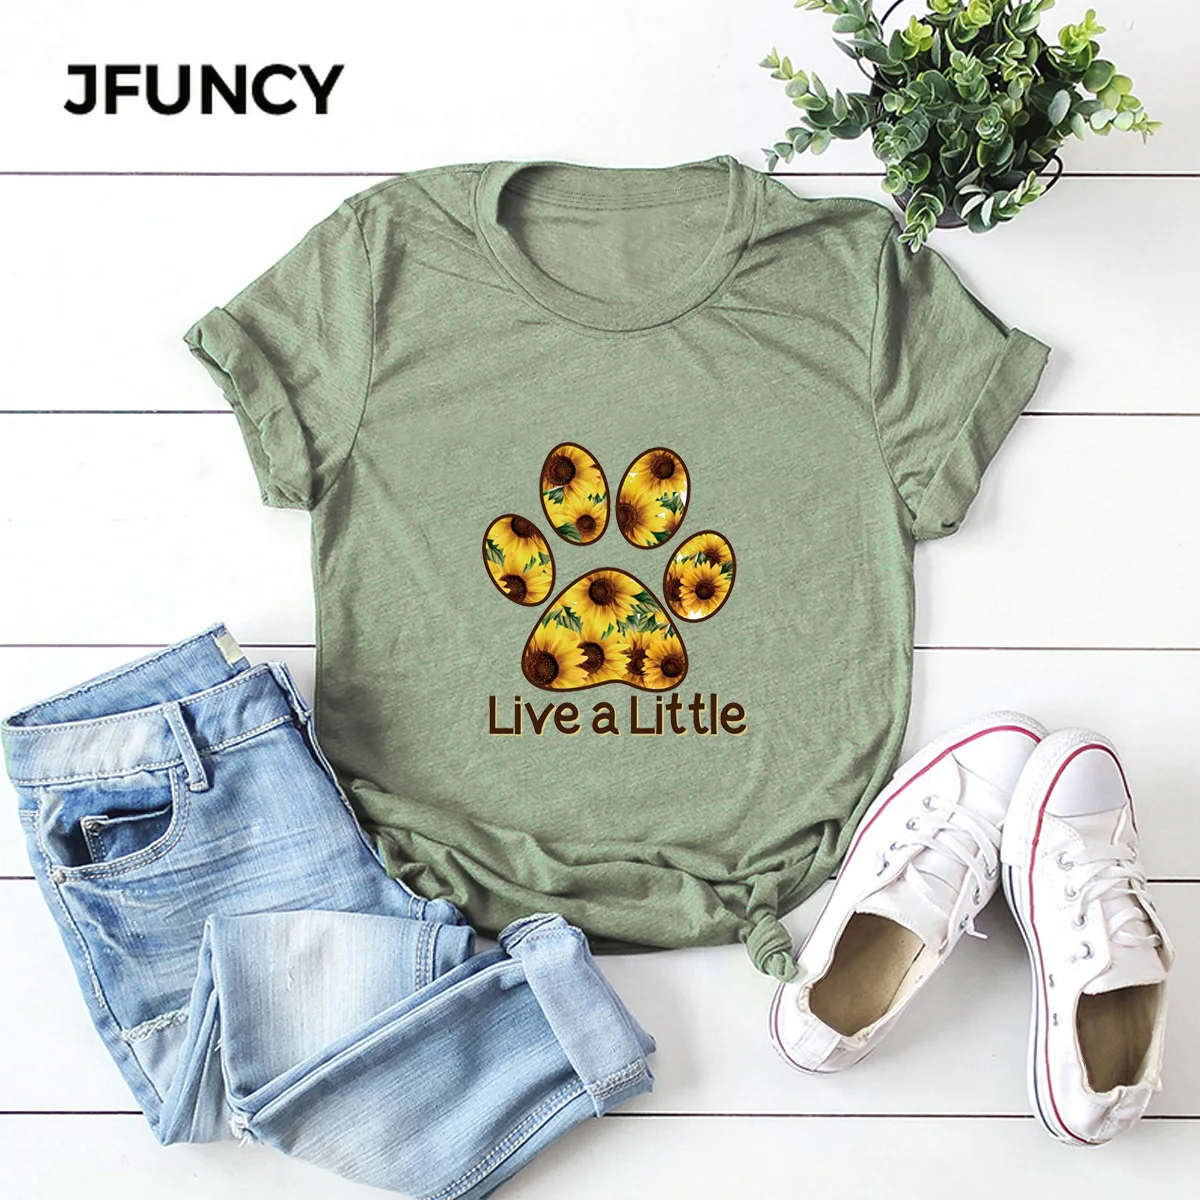 JFUNCY Footprint Print Women's T-shirt Short Sleeve Summer Cotton Tops Women Tee Shirts Female  Casual Clothes